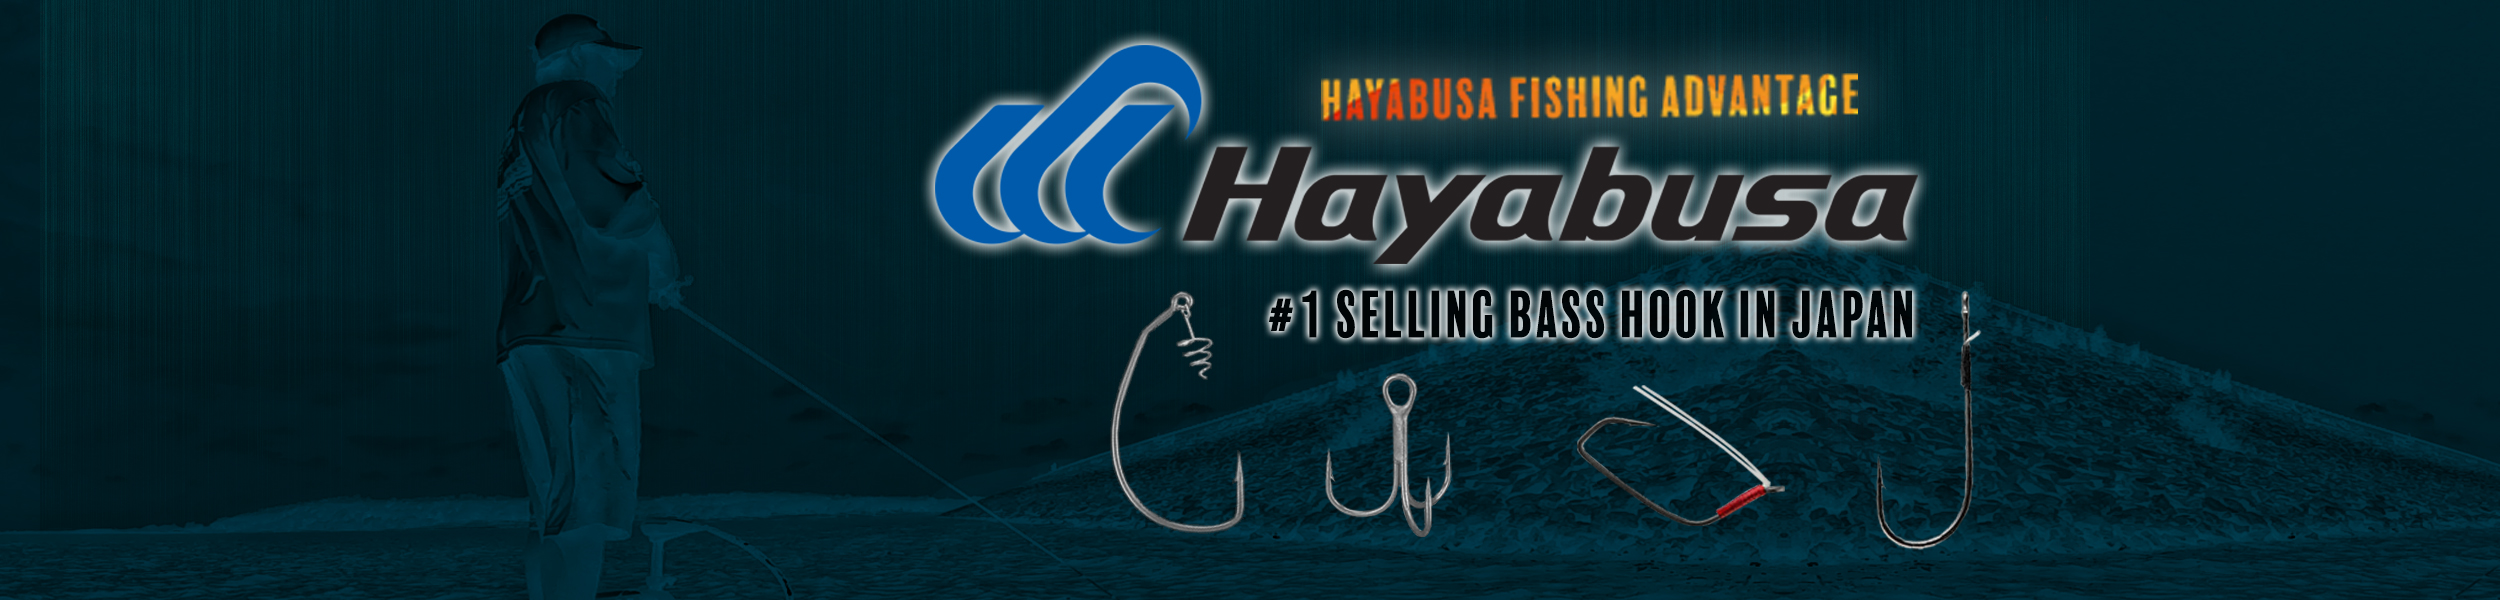 Hayabusa Weedless Wacky Hooks - Dance's Sporting Goods